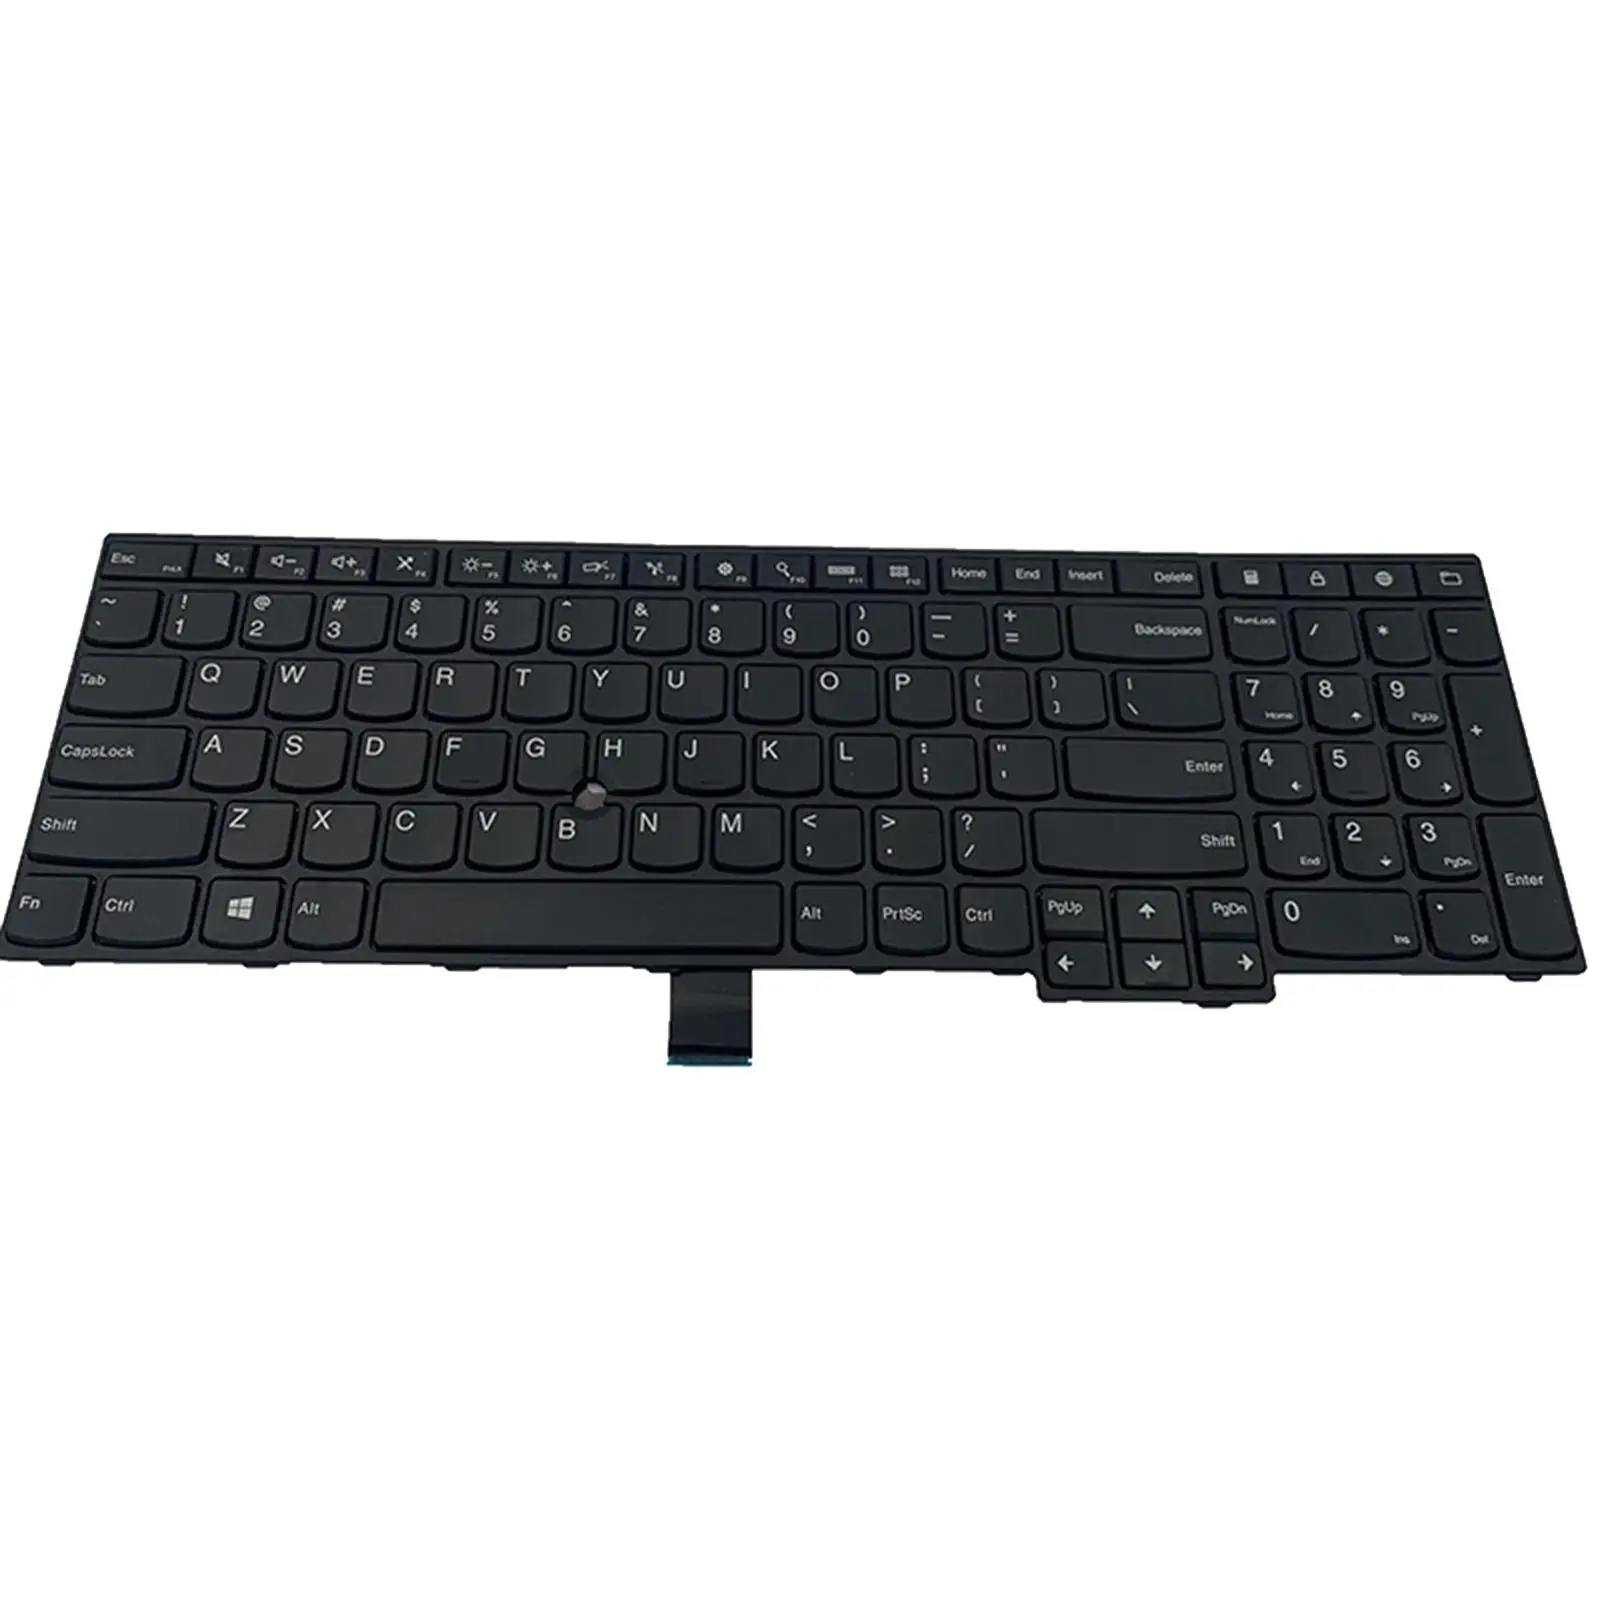 Laptop Keyboard US Layout Replacement Keyboard for ThinkPad E550 E555 E550C E560 E565 SN20F22474 00Hn000 00Hn07 04Y0313 04Y0301